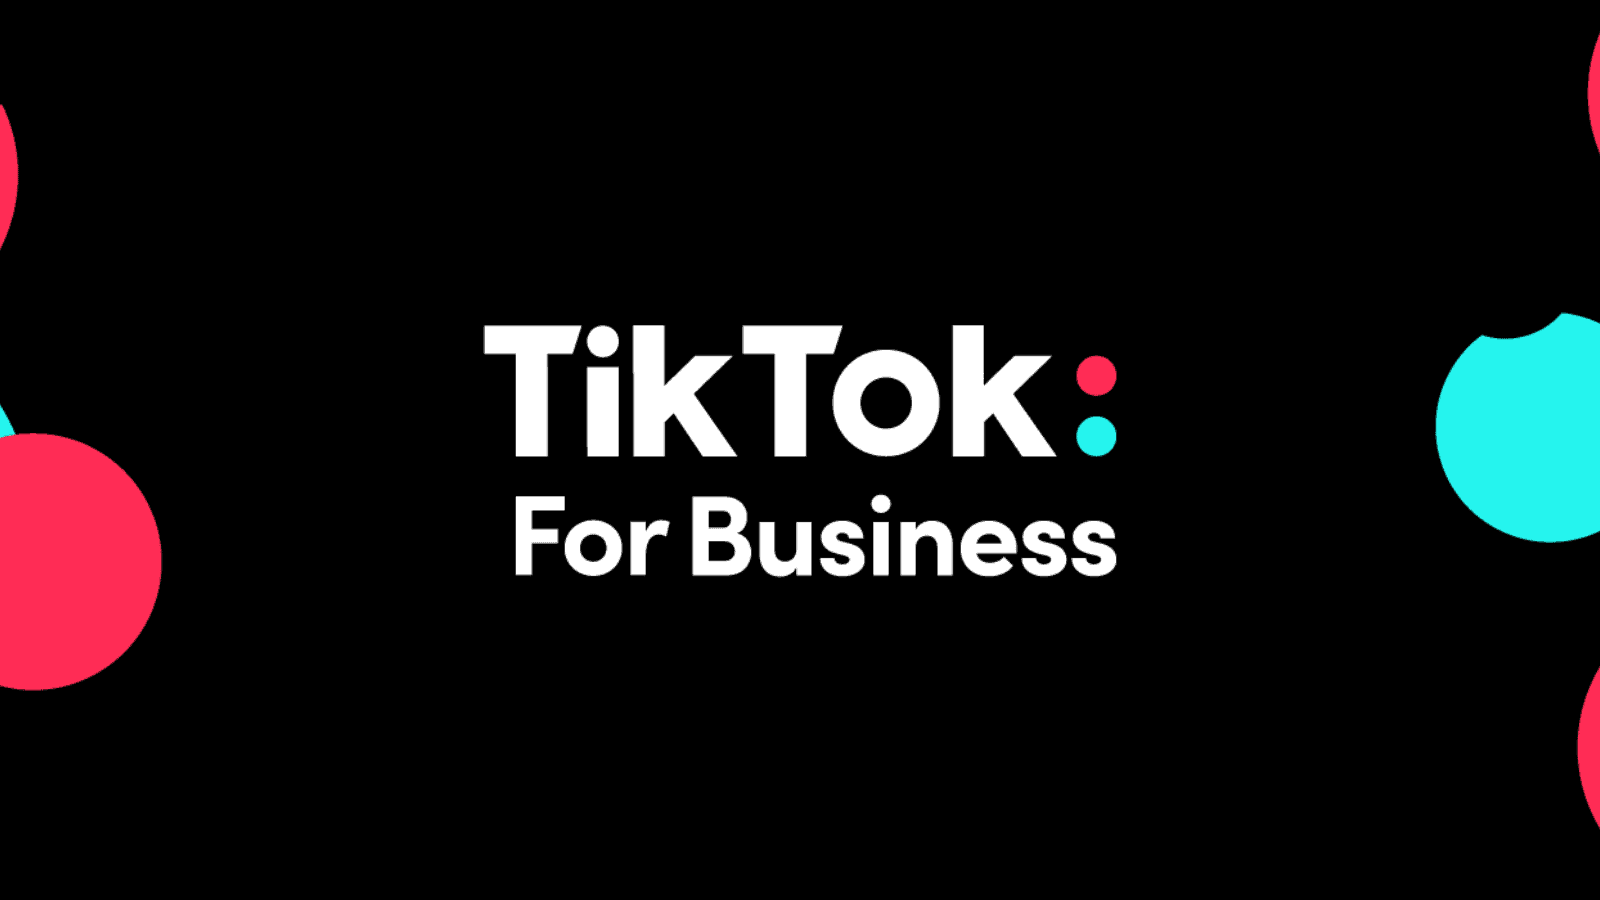 Guia do tiktok ajuda pequenos e médios negócios a prosperarem. O programa "vem comigo" oferecerá um guia e diversas dicas de pessoas que conseguiram fazer sucesso no tiktok. Veja como se inscrever!